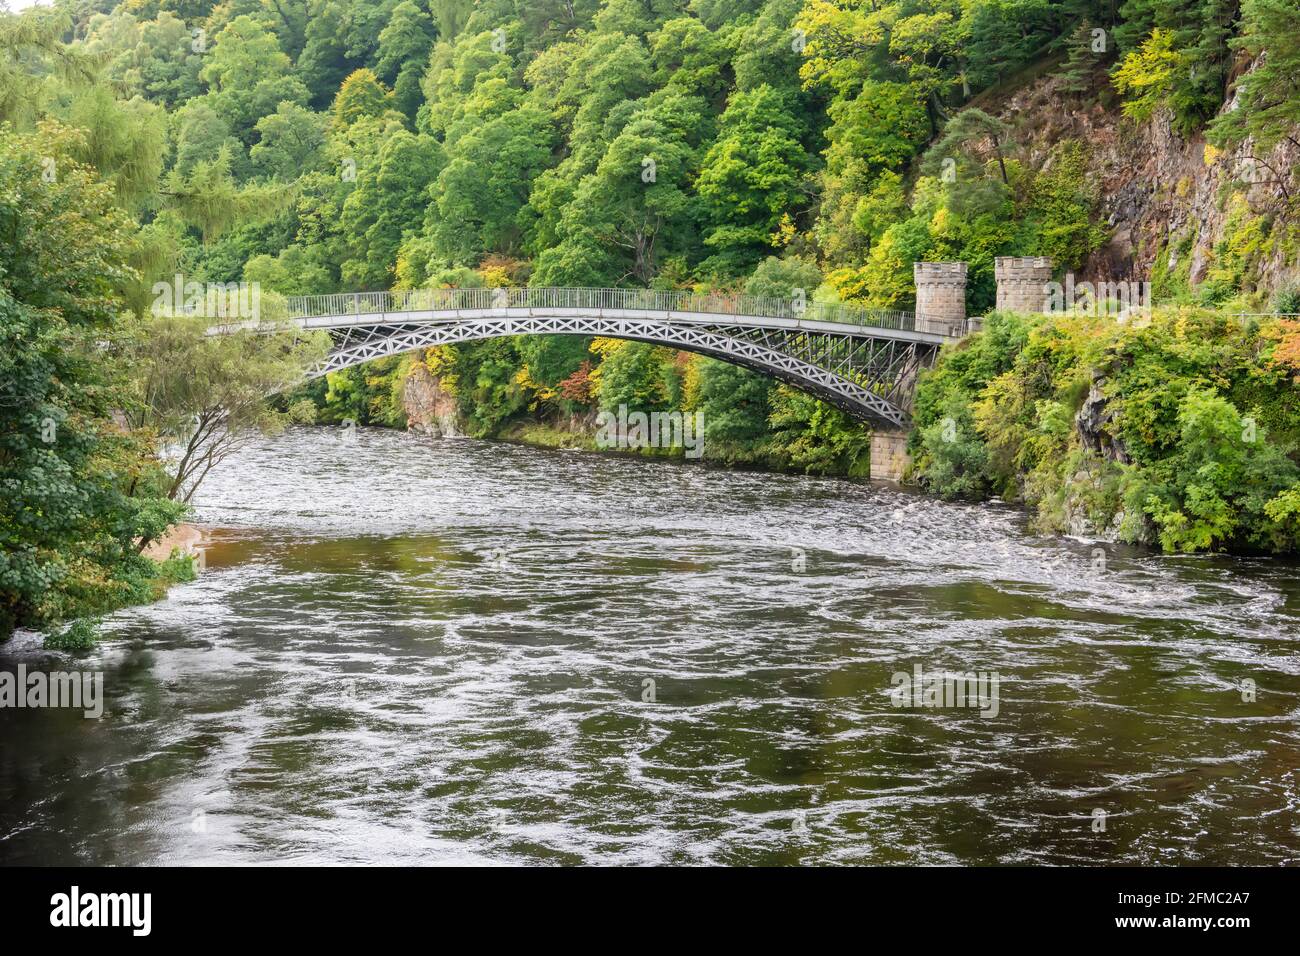 Craigellachie Bridge, un ponte ad arco in ghisa che attraversa il fiume Spey a Craigellachie, vicino al villaggio di Aberlour a Moray, Scozia. Il ponte w Foto Stock